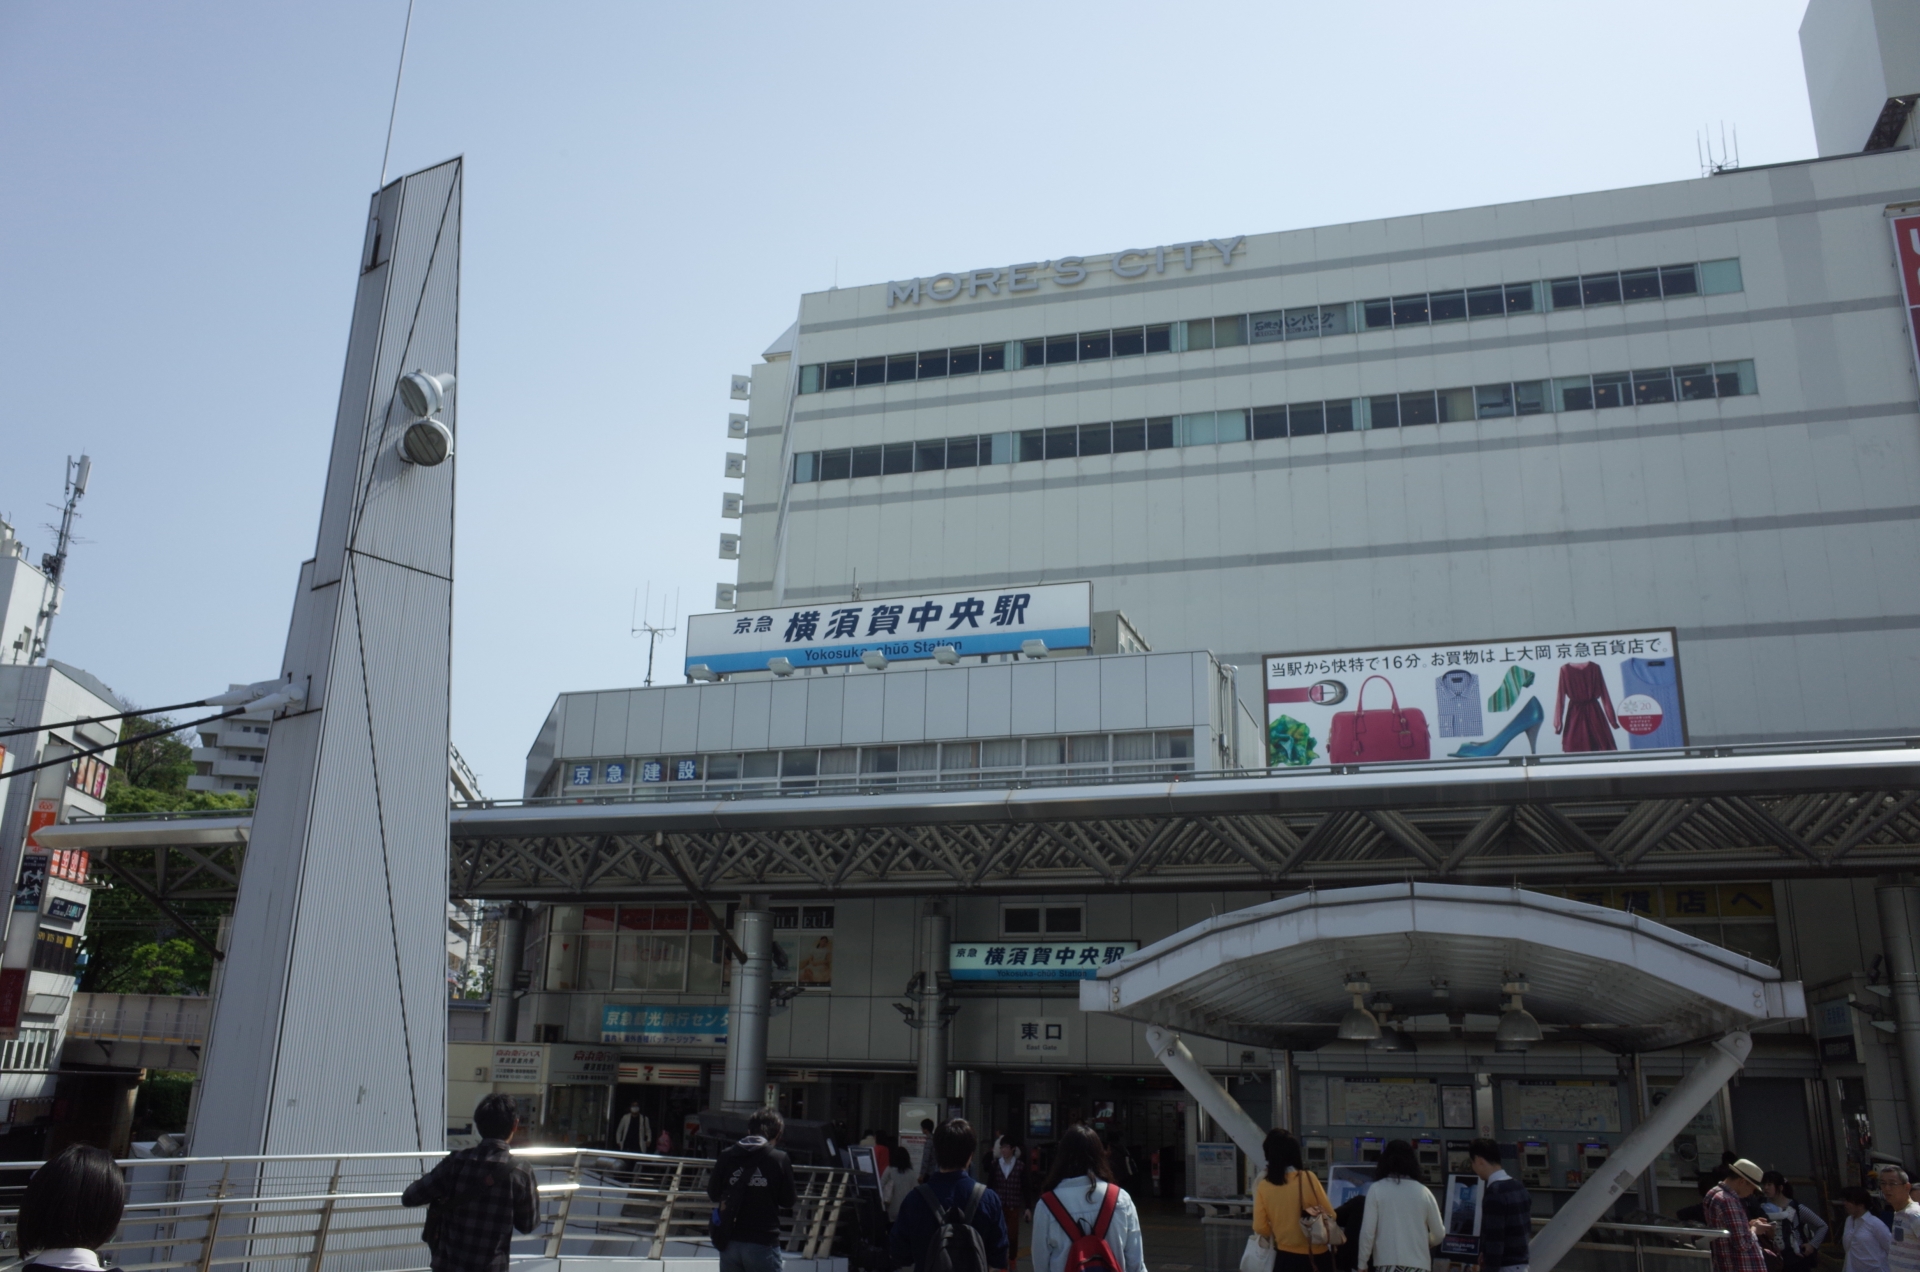 横須賀の玄関口である横須賀中央駅。同市でもっとも乗降客数の多い駅で、周辺にはビジネス・商業施設などが集積している。